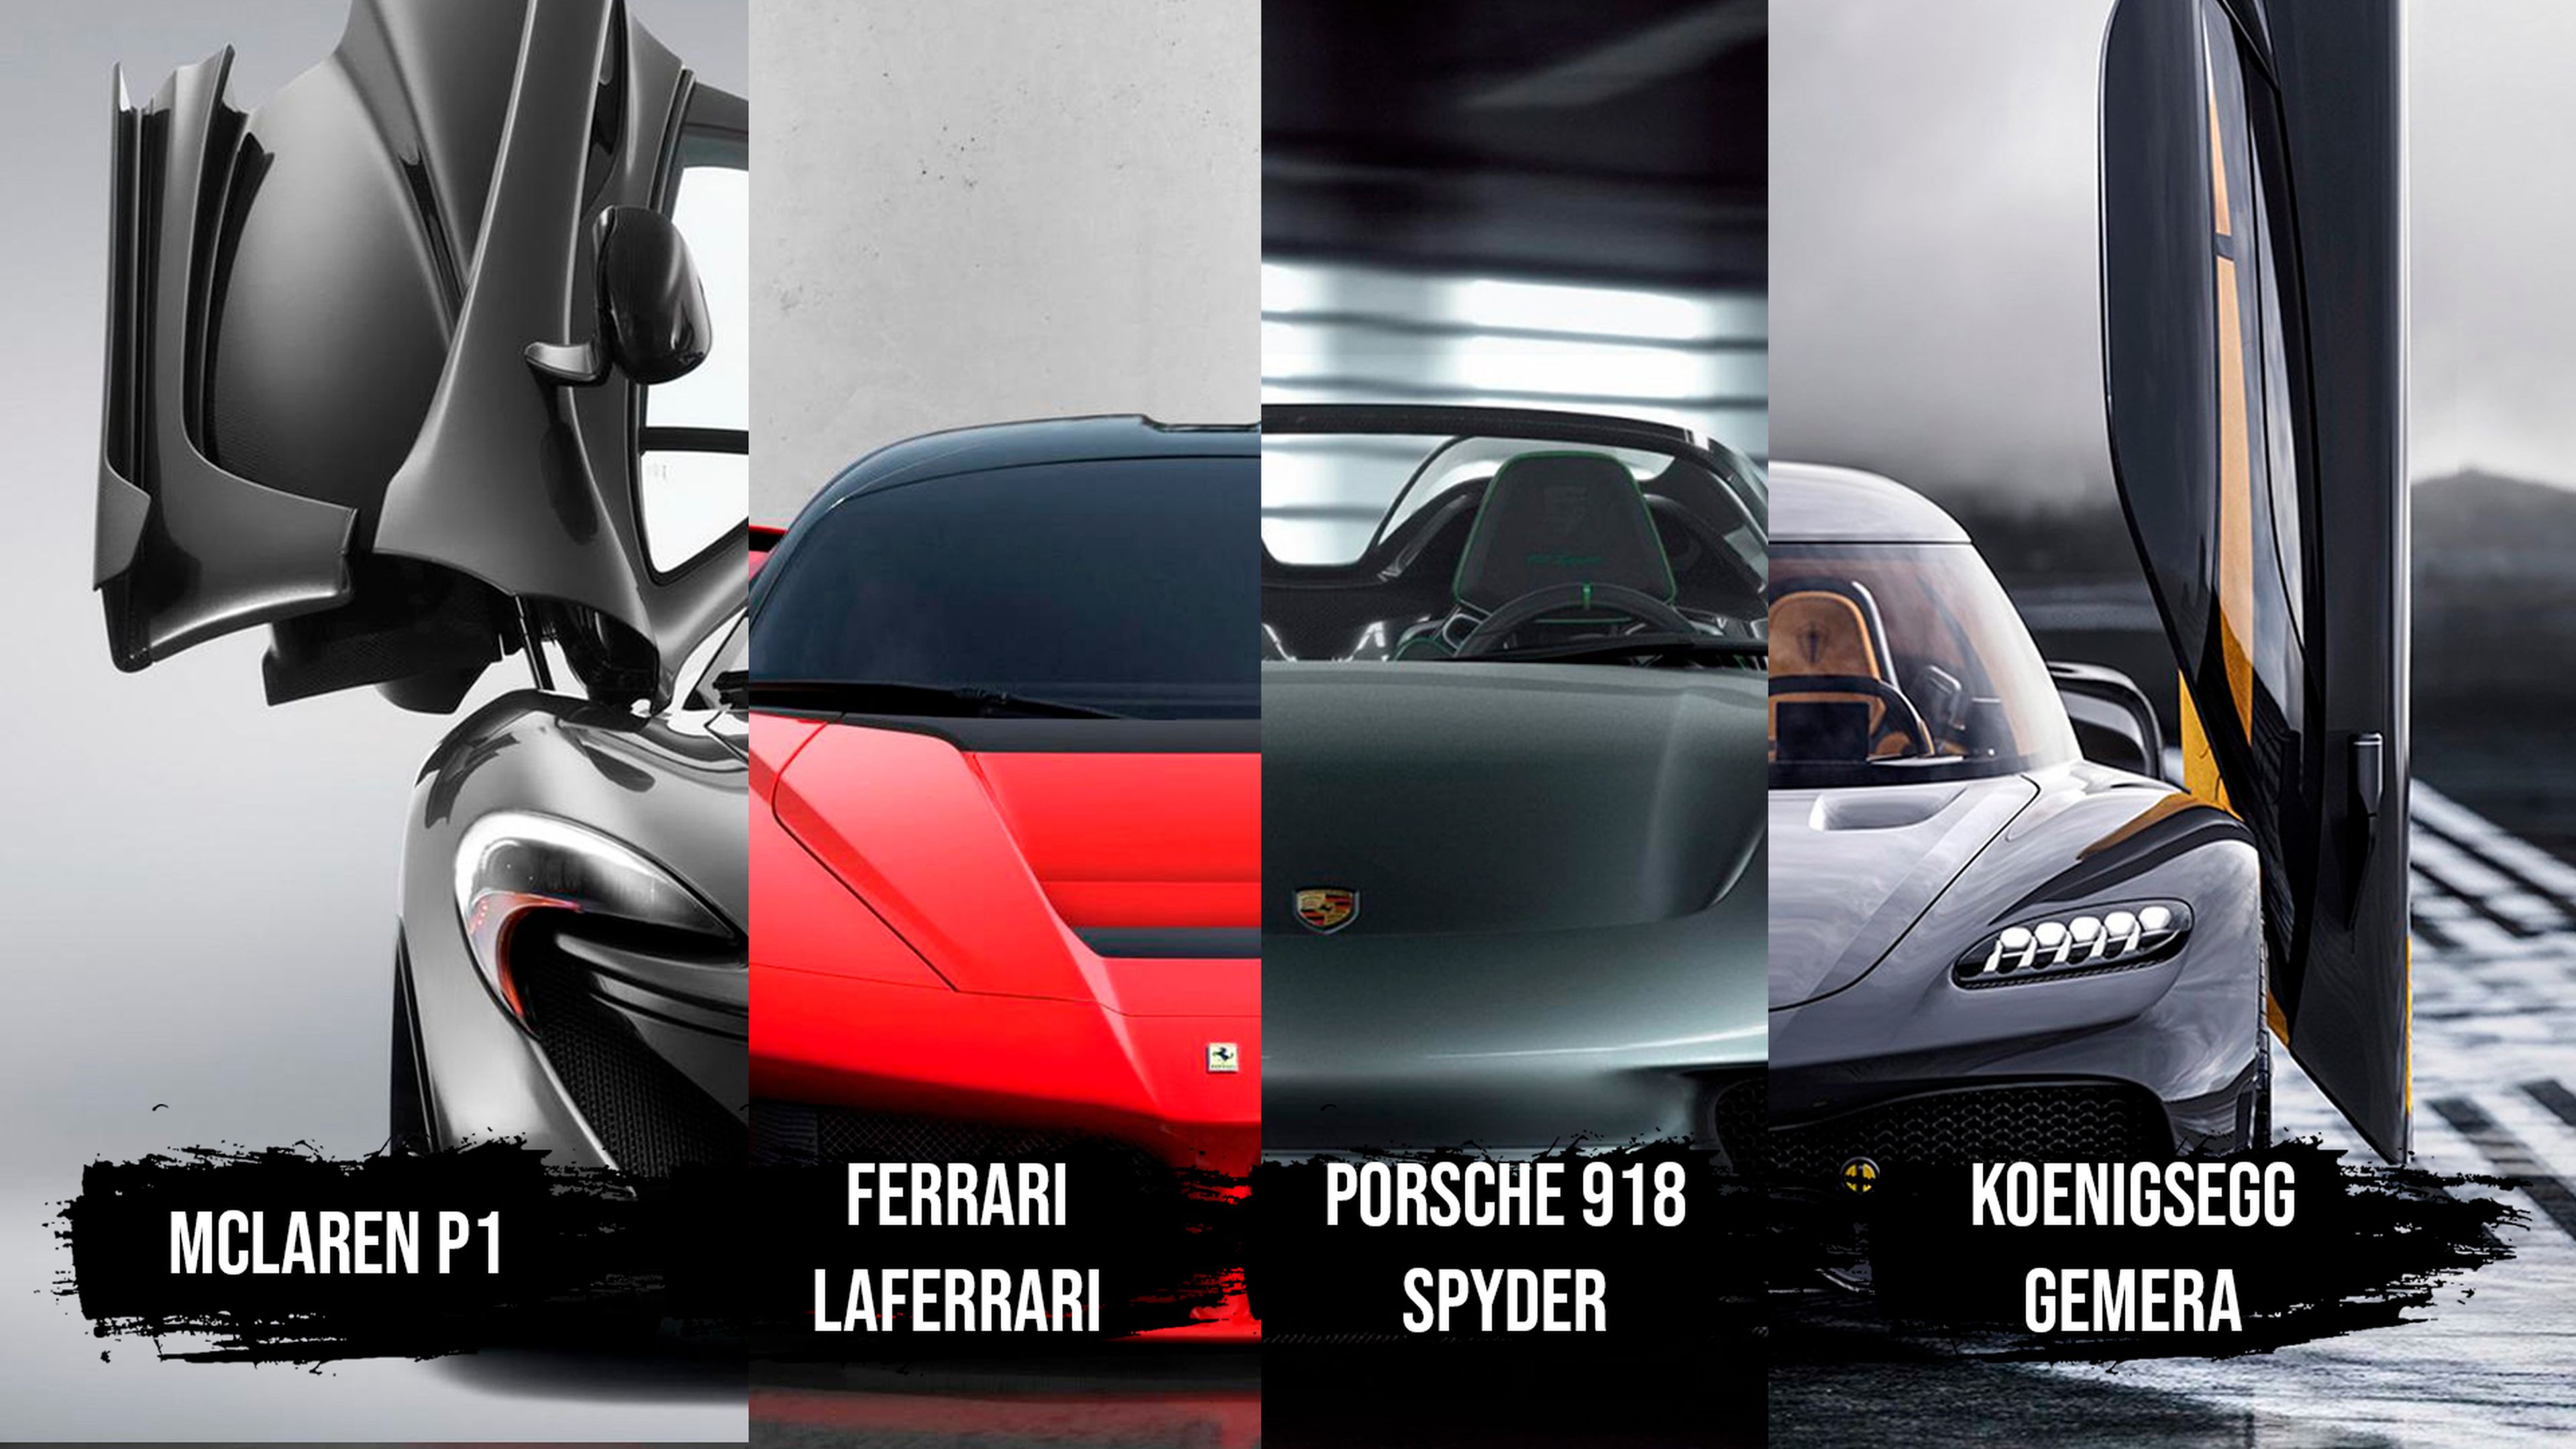 McLaren P1, Ferrari LaFerrari, Porsche 918 Spyder, Koenigsegg Gemera